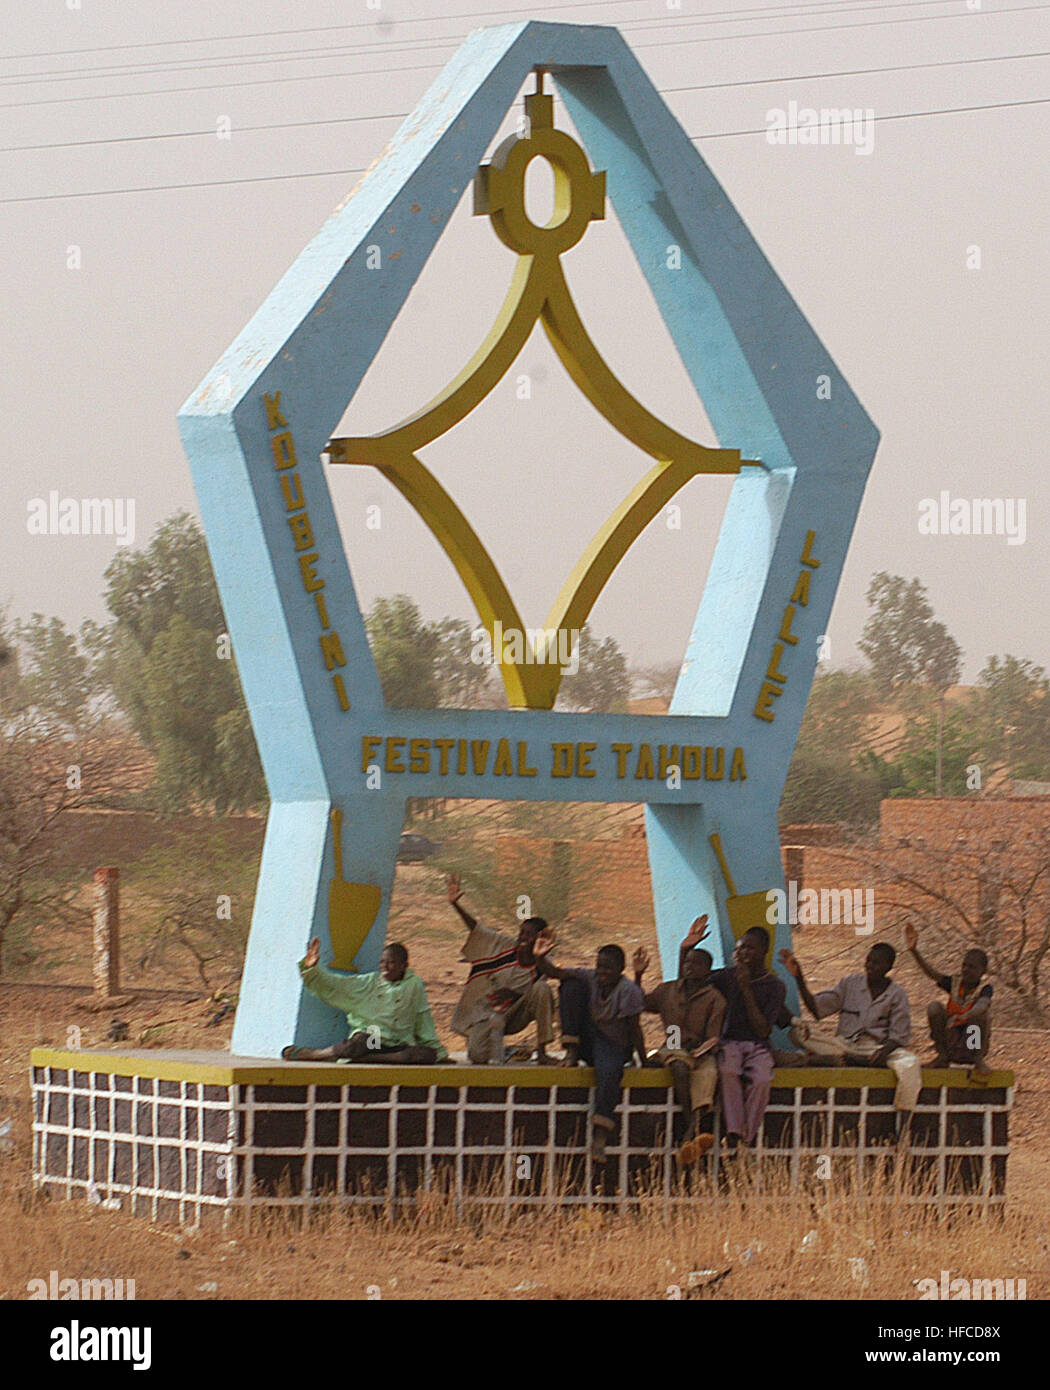 Enfants nigériens vague à un convoi de marines à propos de distribuer des repas, prêt à manger (MREs) aux citoyens de Tahoua, Niger. Les marines sont au Niger dans le cadre de l'exercice 2006, l'Accord de partage d'un exercice qui apporte l'aide humanitaire au Niger, tout en permettant aux États-Unis et bilatéraux de lutte contre le terrorisme nigérien de la formation. 2006 Niger Tahoua Monument Banque D'Images